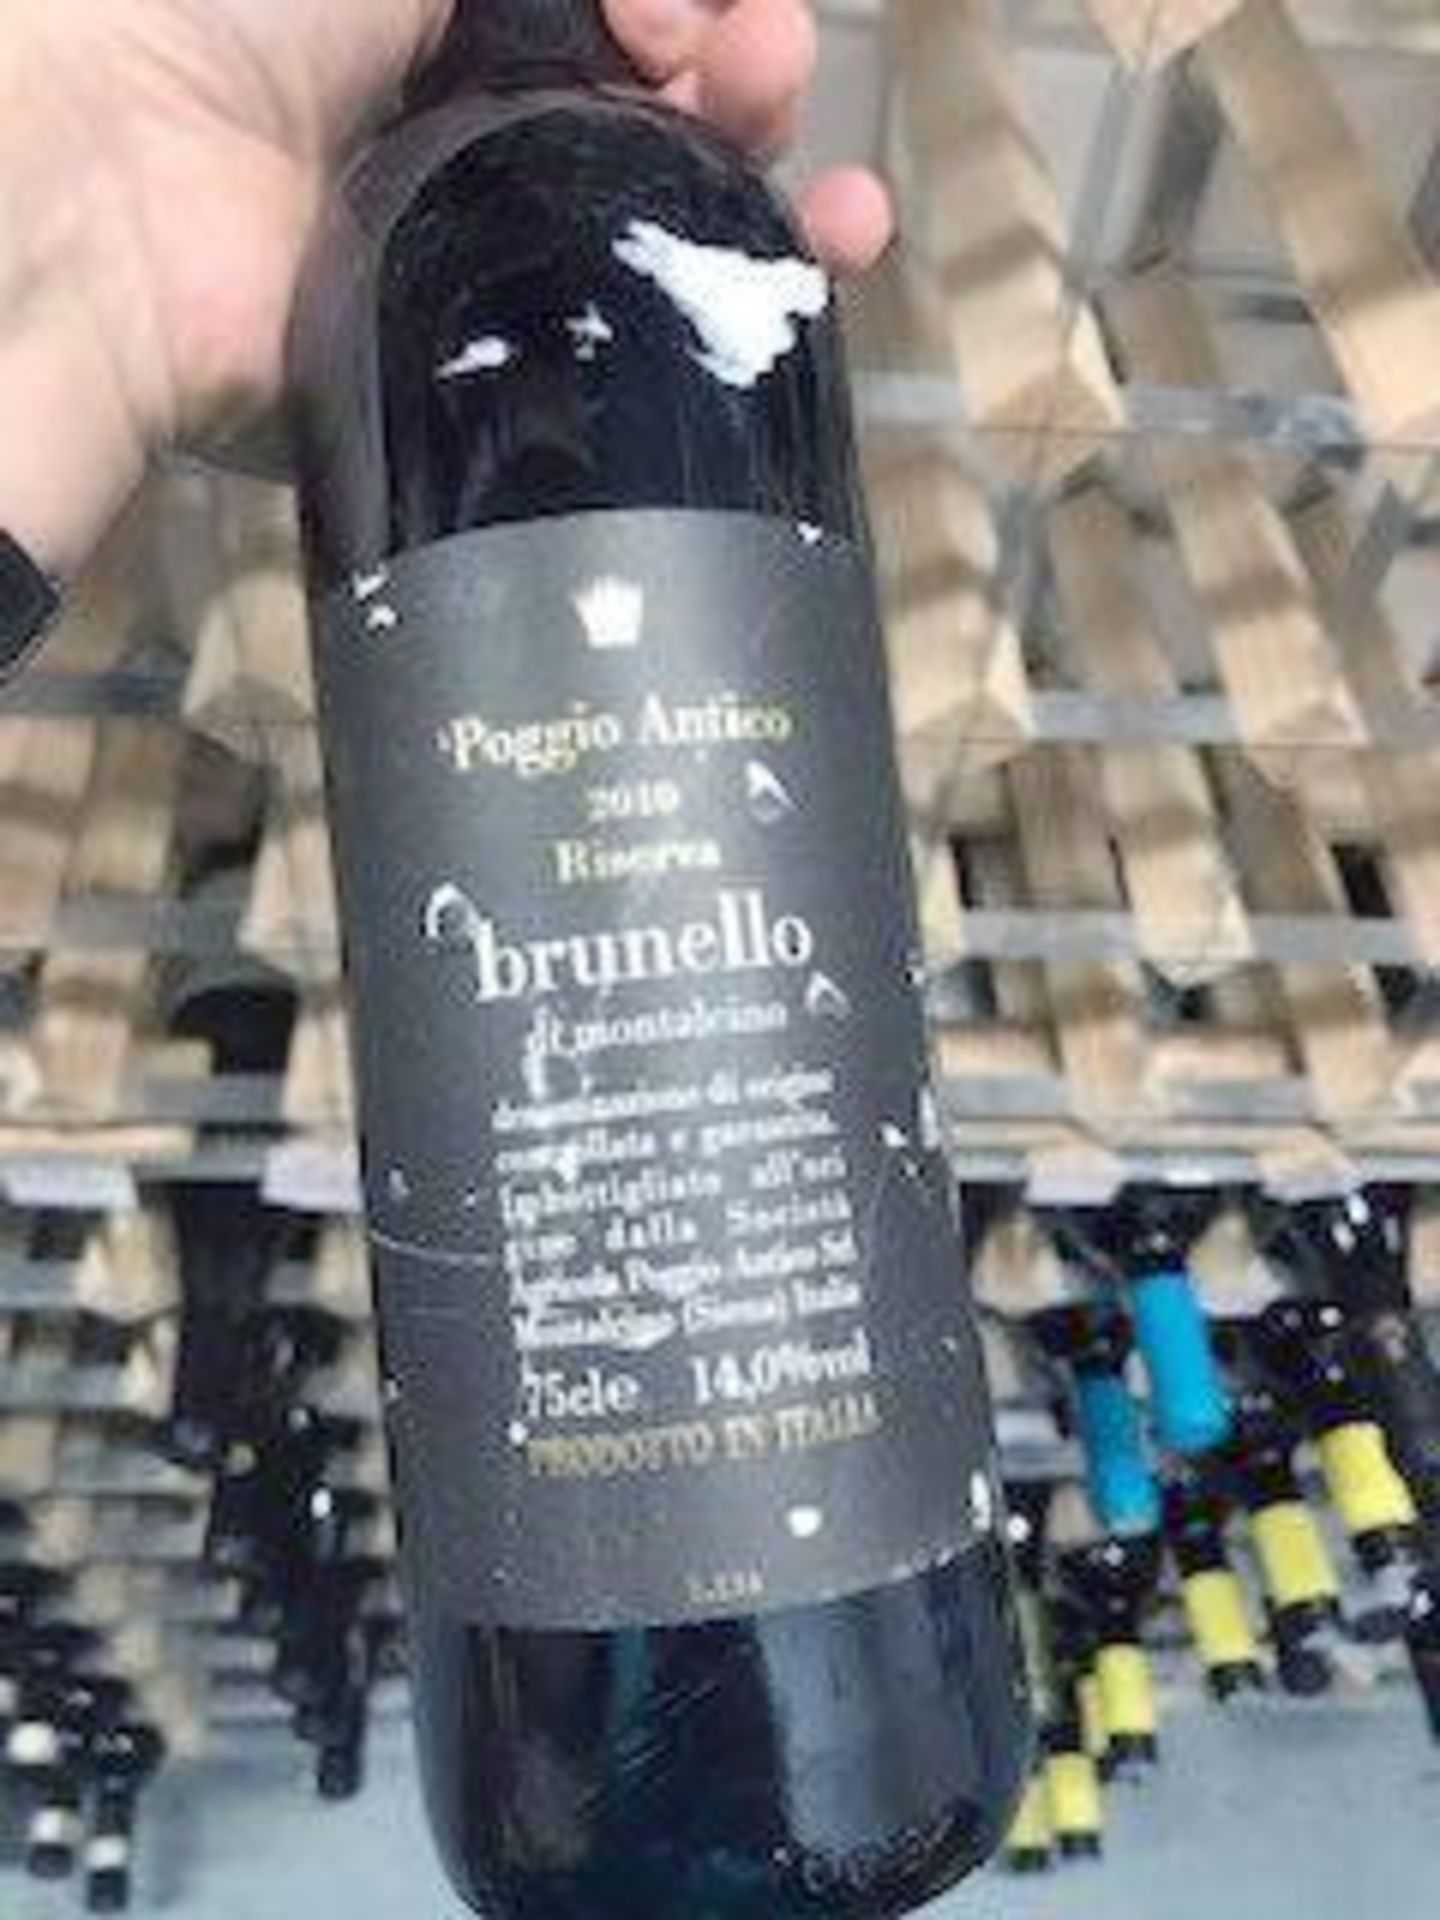 Red Wine - -Brunello Di Montalcino Riserva Poggio Antico 2010 1 X Bottle Bin Number (5229)